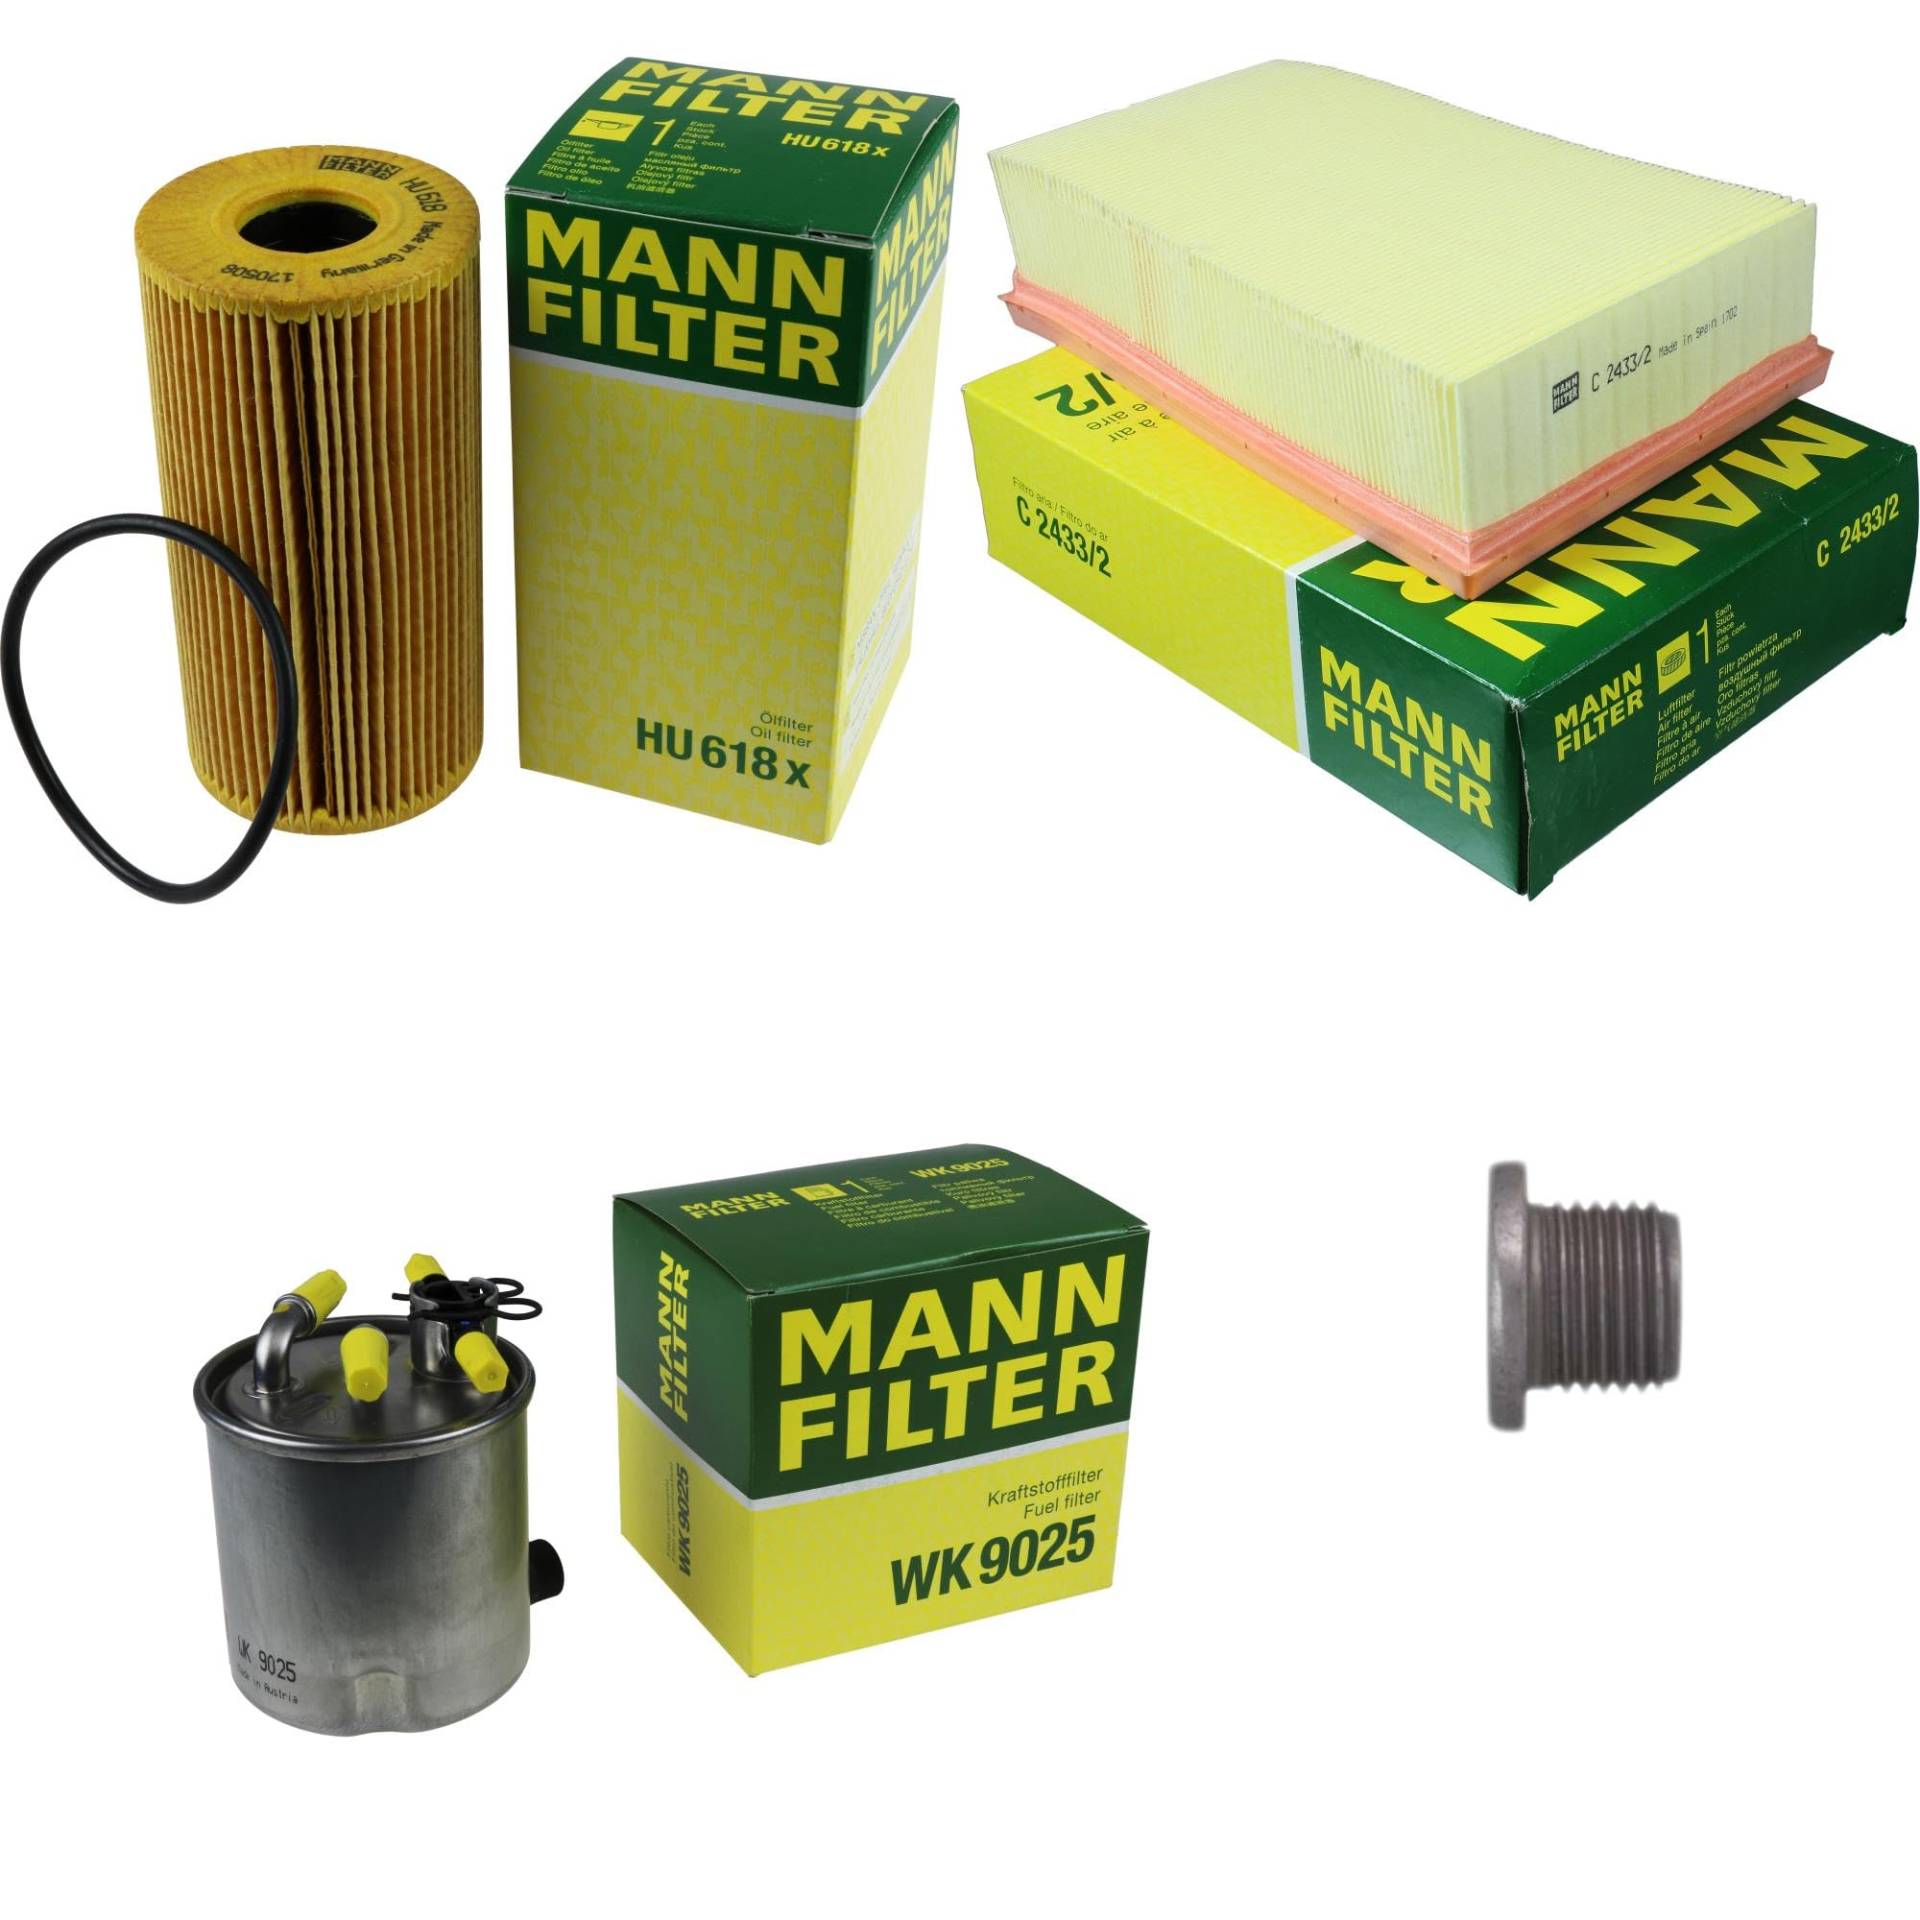 EISENFELS Filter Set Inspektionspaket erstellt mit MANN-FILTER Ölfilter HU 618 x, Luftfilter C 2433/2, Kraftstofffilter WK 9025, Verschlussschraube von EISENFELS